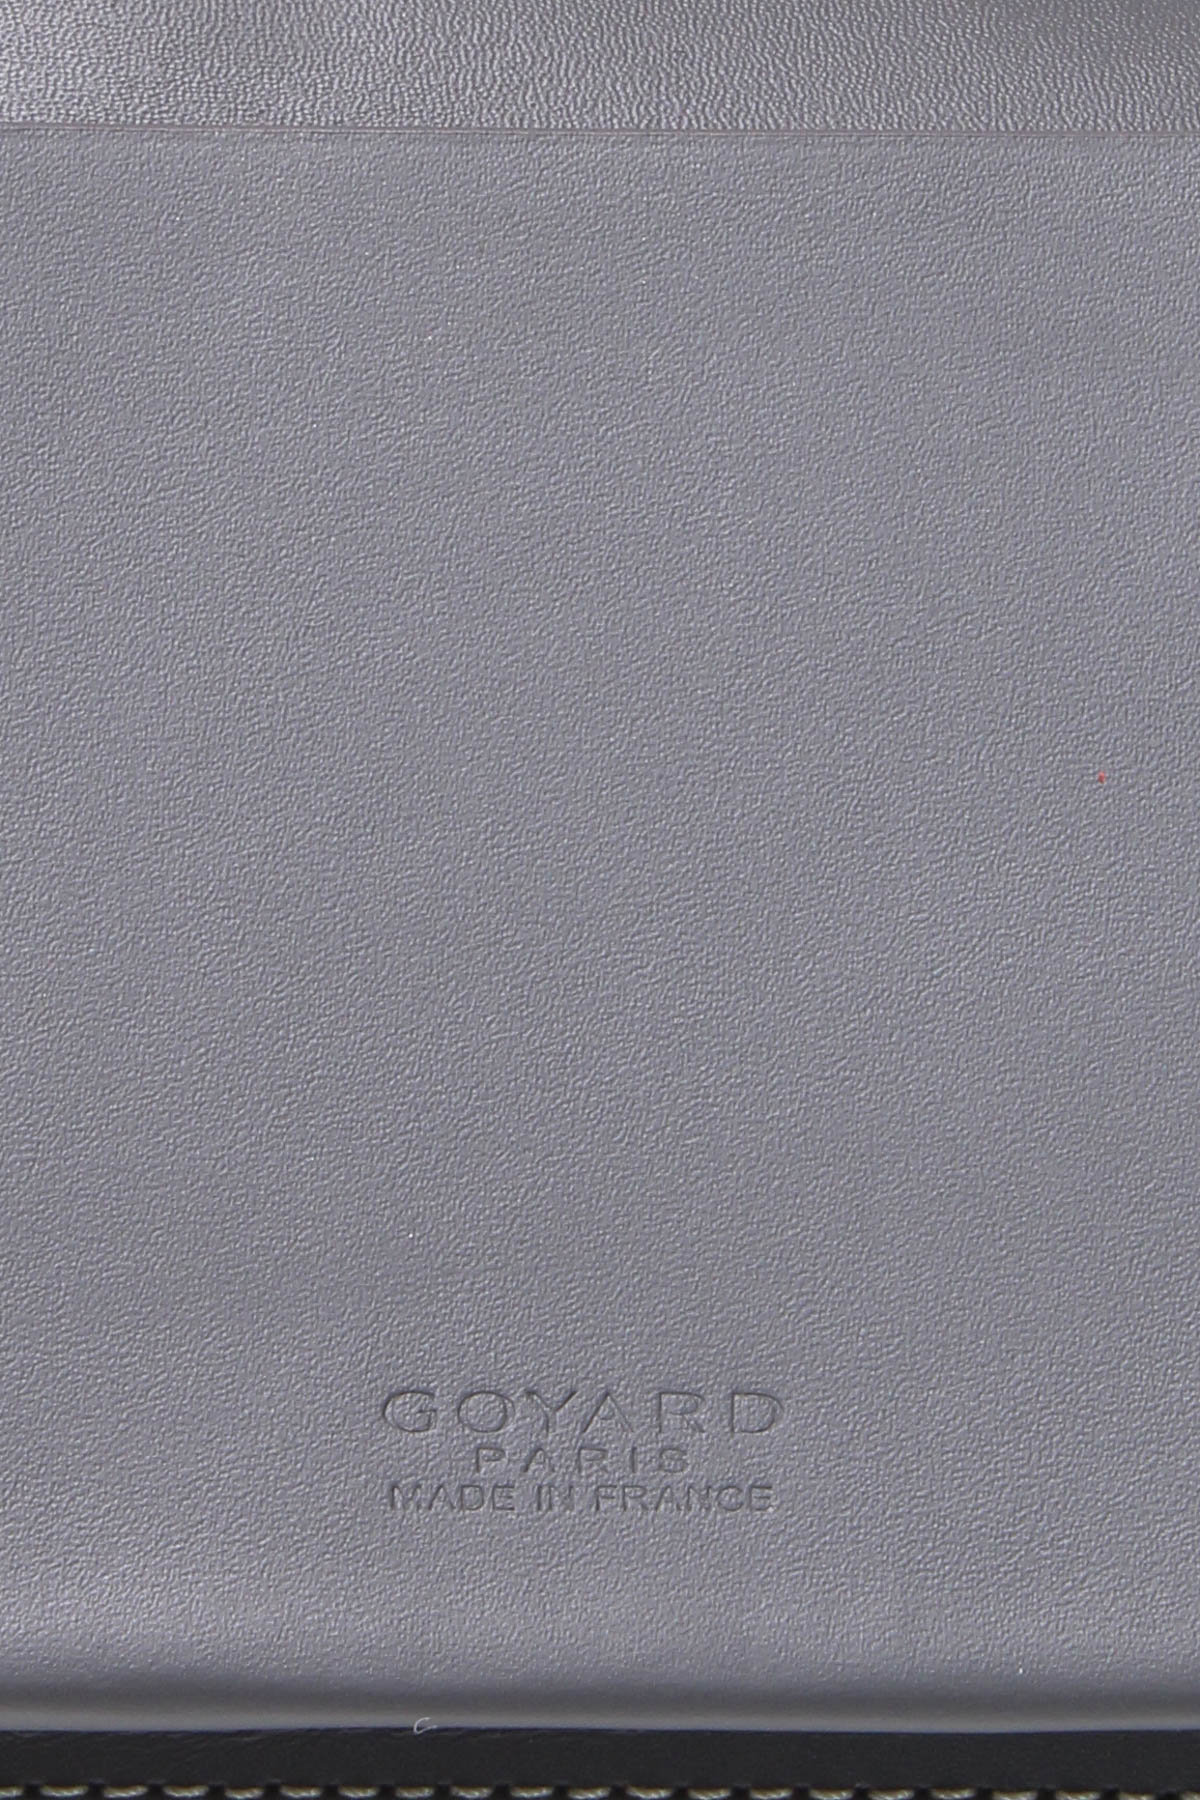 Goyard Saint-Lambert Wallet - Shop Now - Goyard World